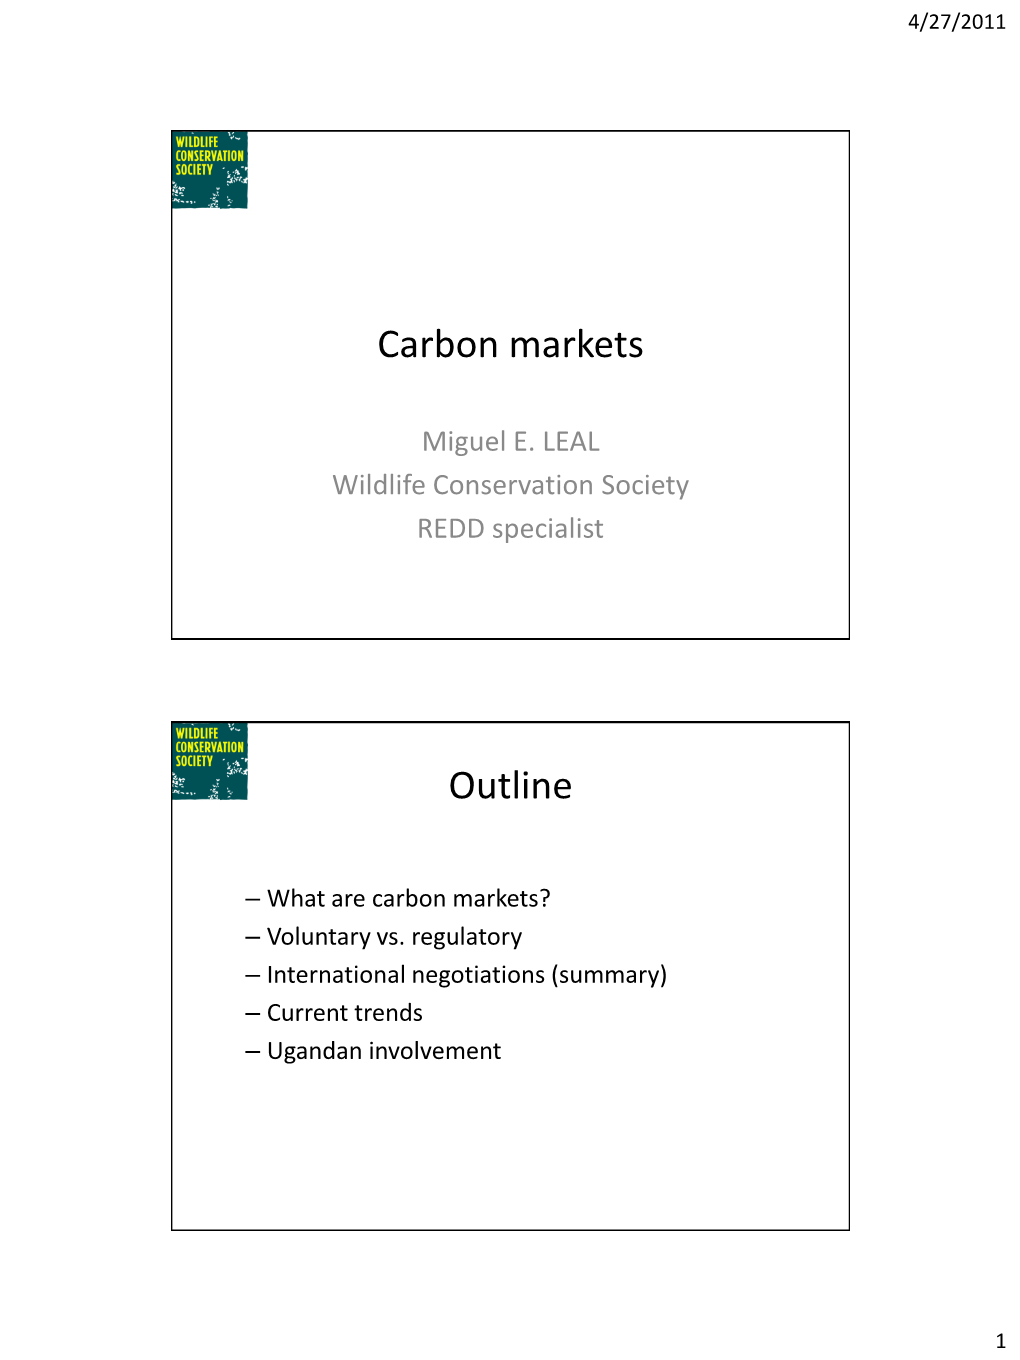 Carbon Market